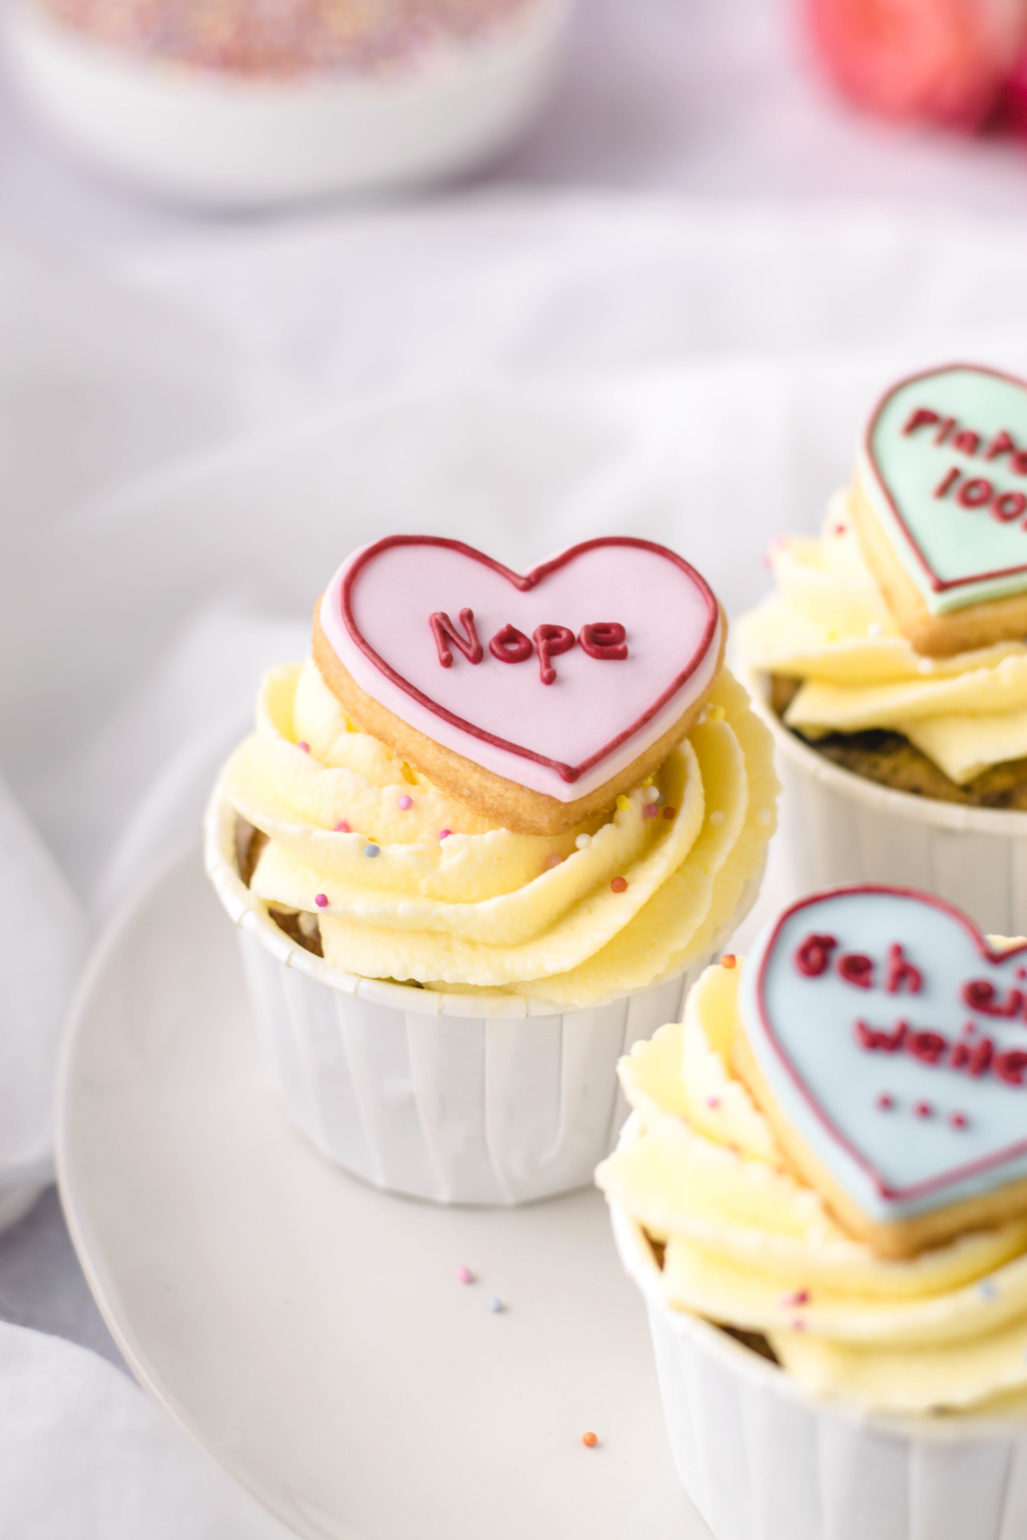 Rezept für saftige Blaubeer Cupcakes zum Anti Valentinstag. Cupcakes mit Frischkäse Buttercreme Frosting dekoriert. Einfach gemacht und schnell aufgegessen! #Cupcakes #Valentinstag #Frischkäse